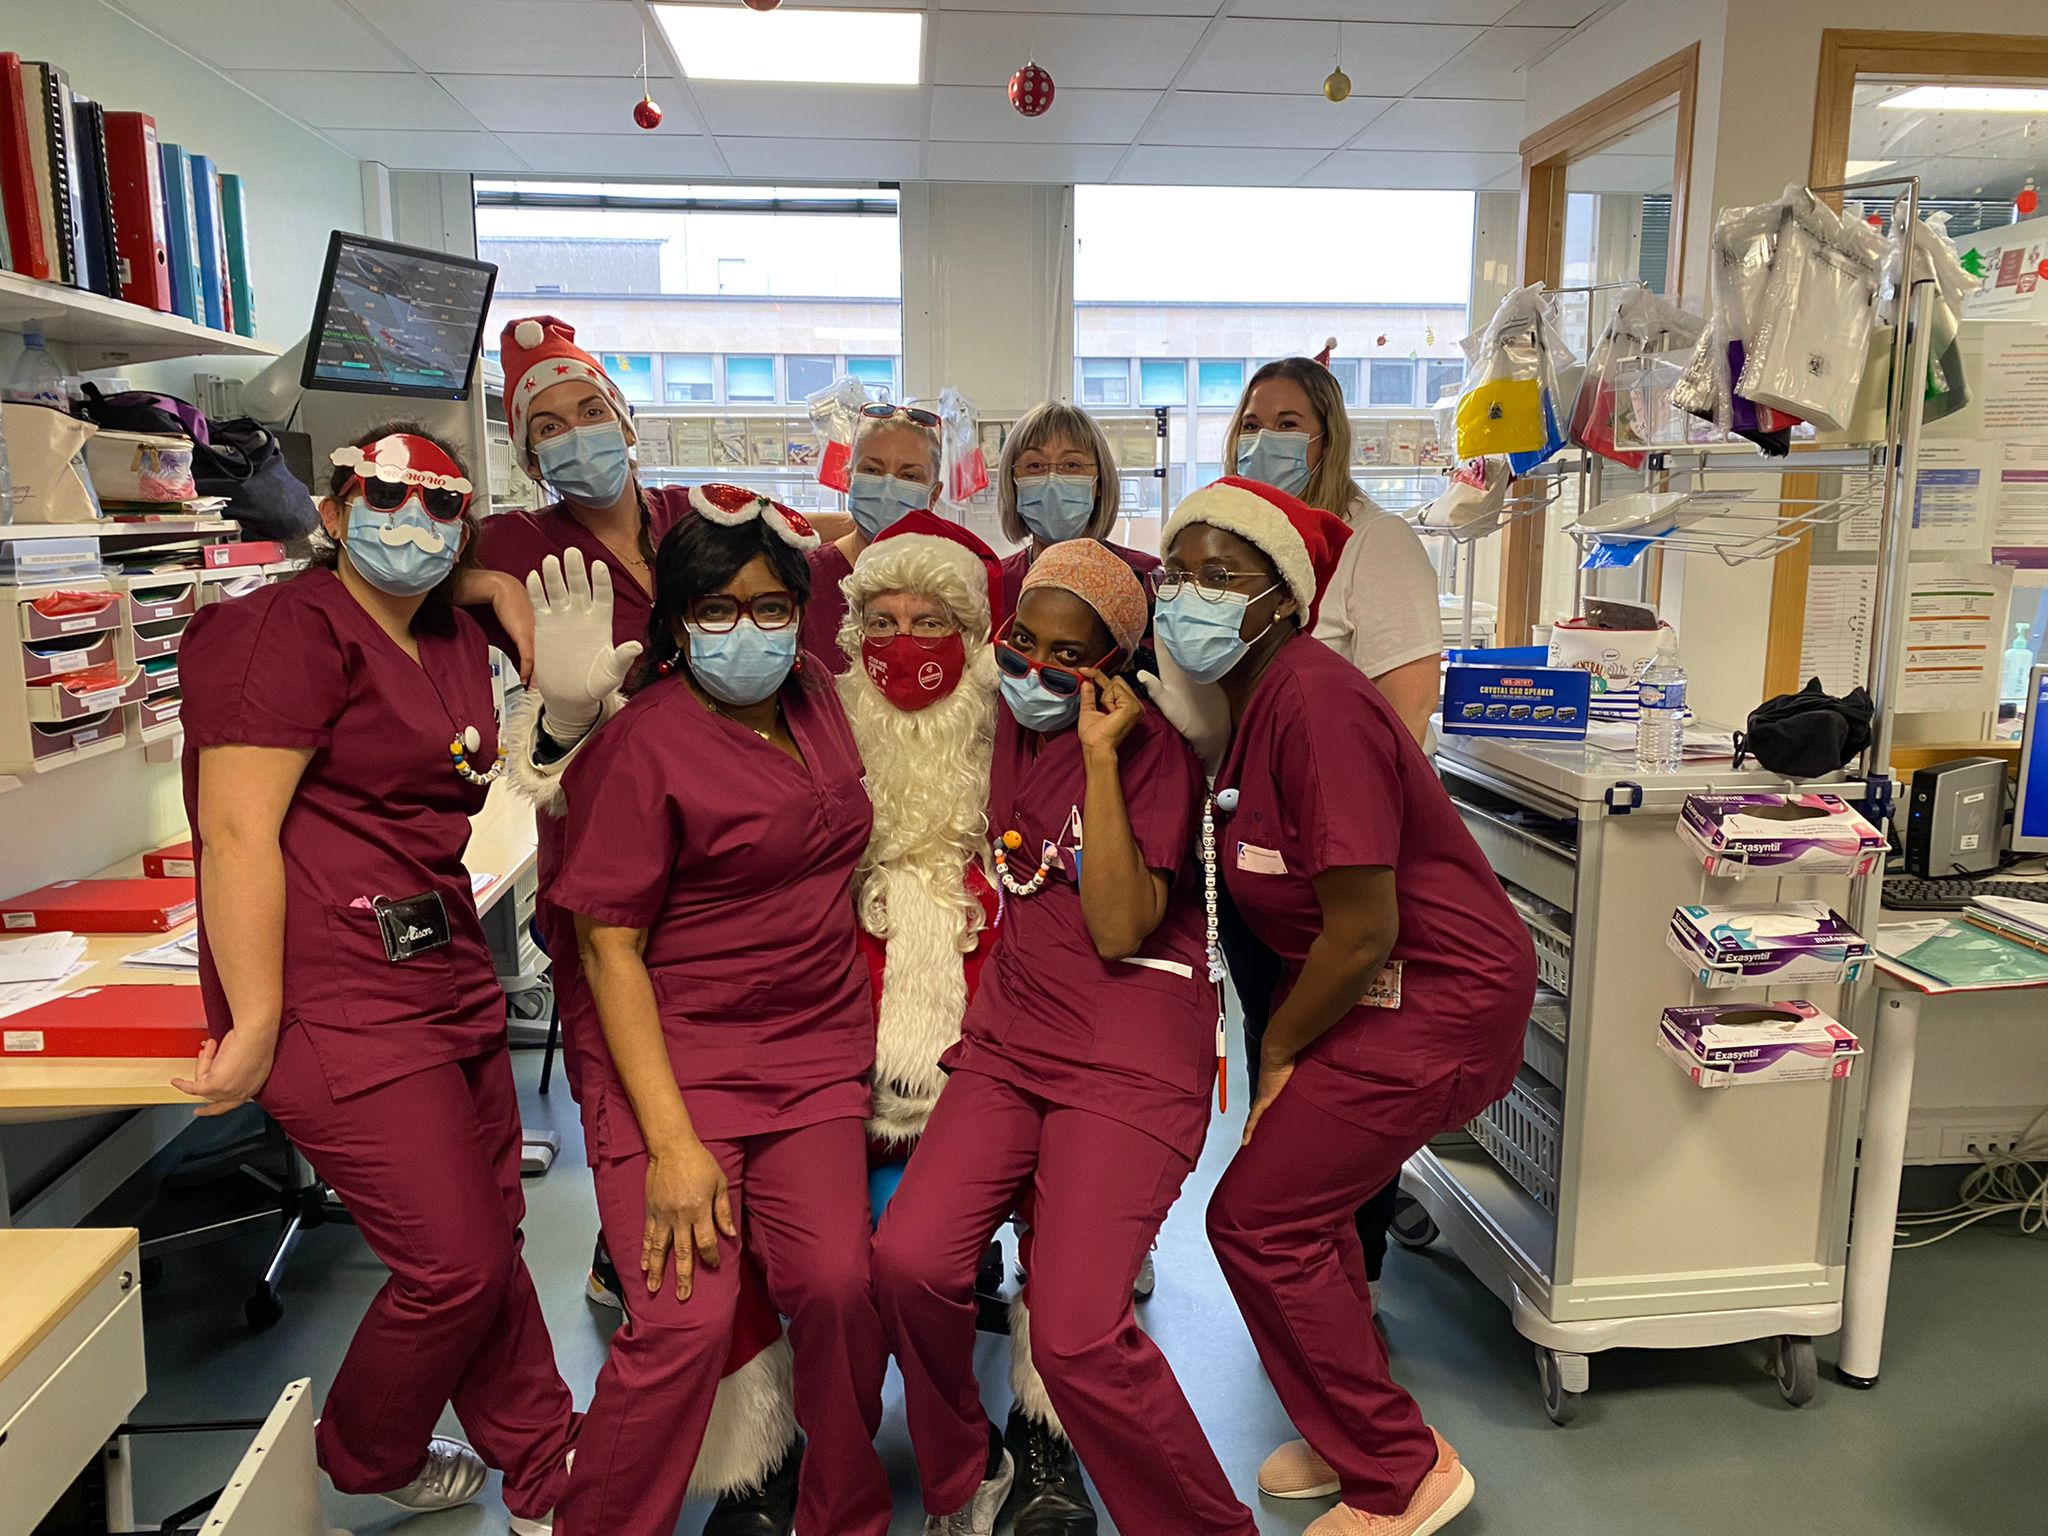 Le père Noël et les infirmières à l'hôpital Necker